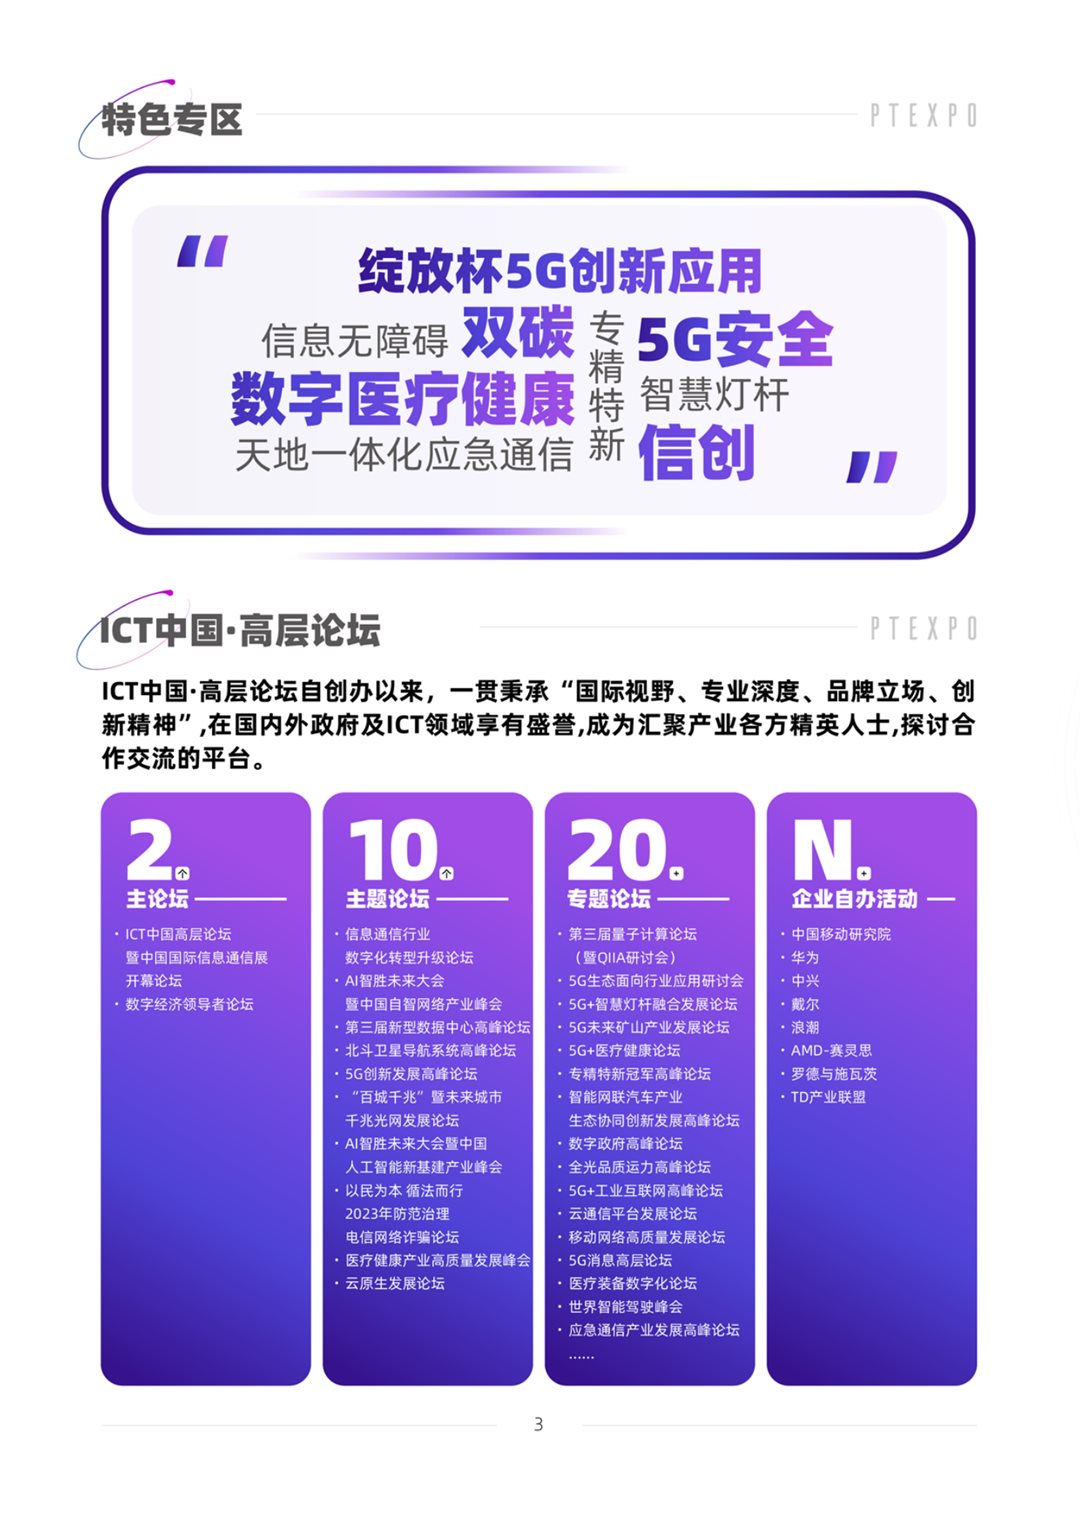 中国国际信息通信展-邀请函_03.png